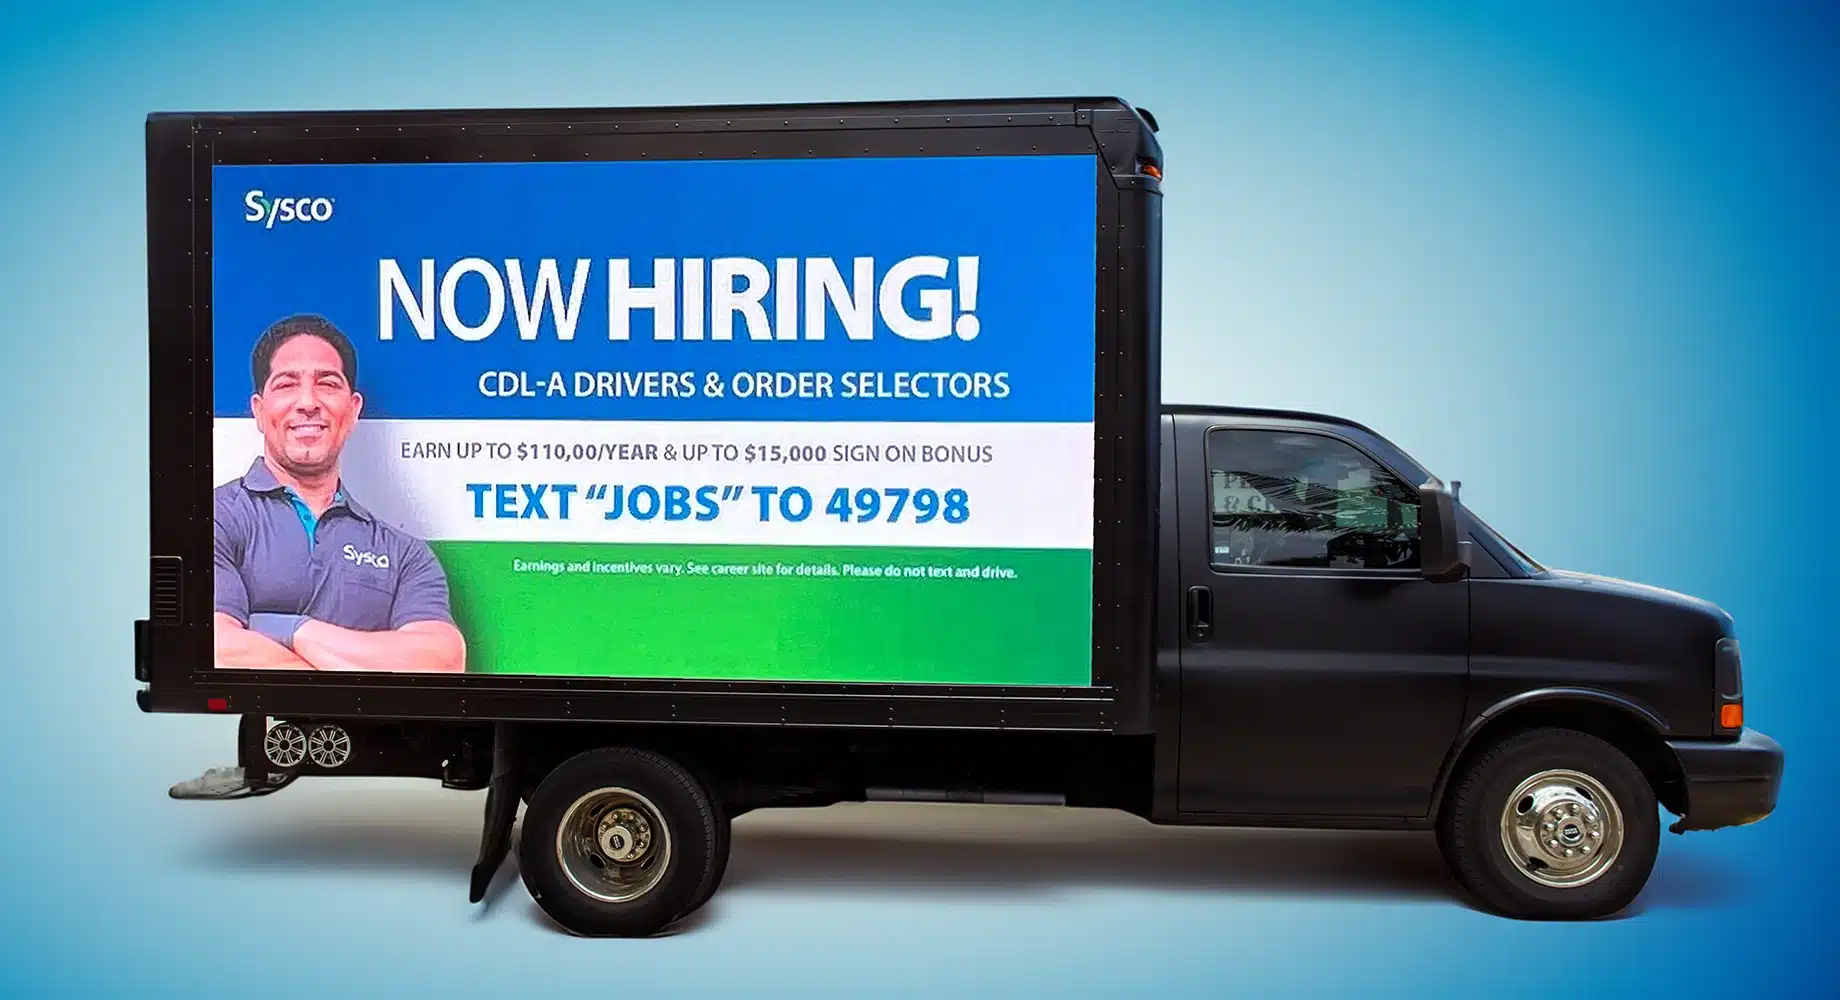 Recruitment Advertising - Mobile Billboard LED Truck Advertising